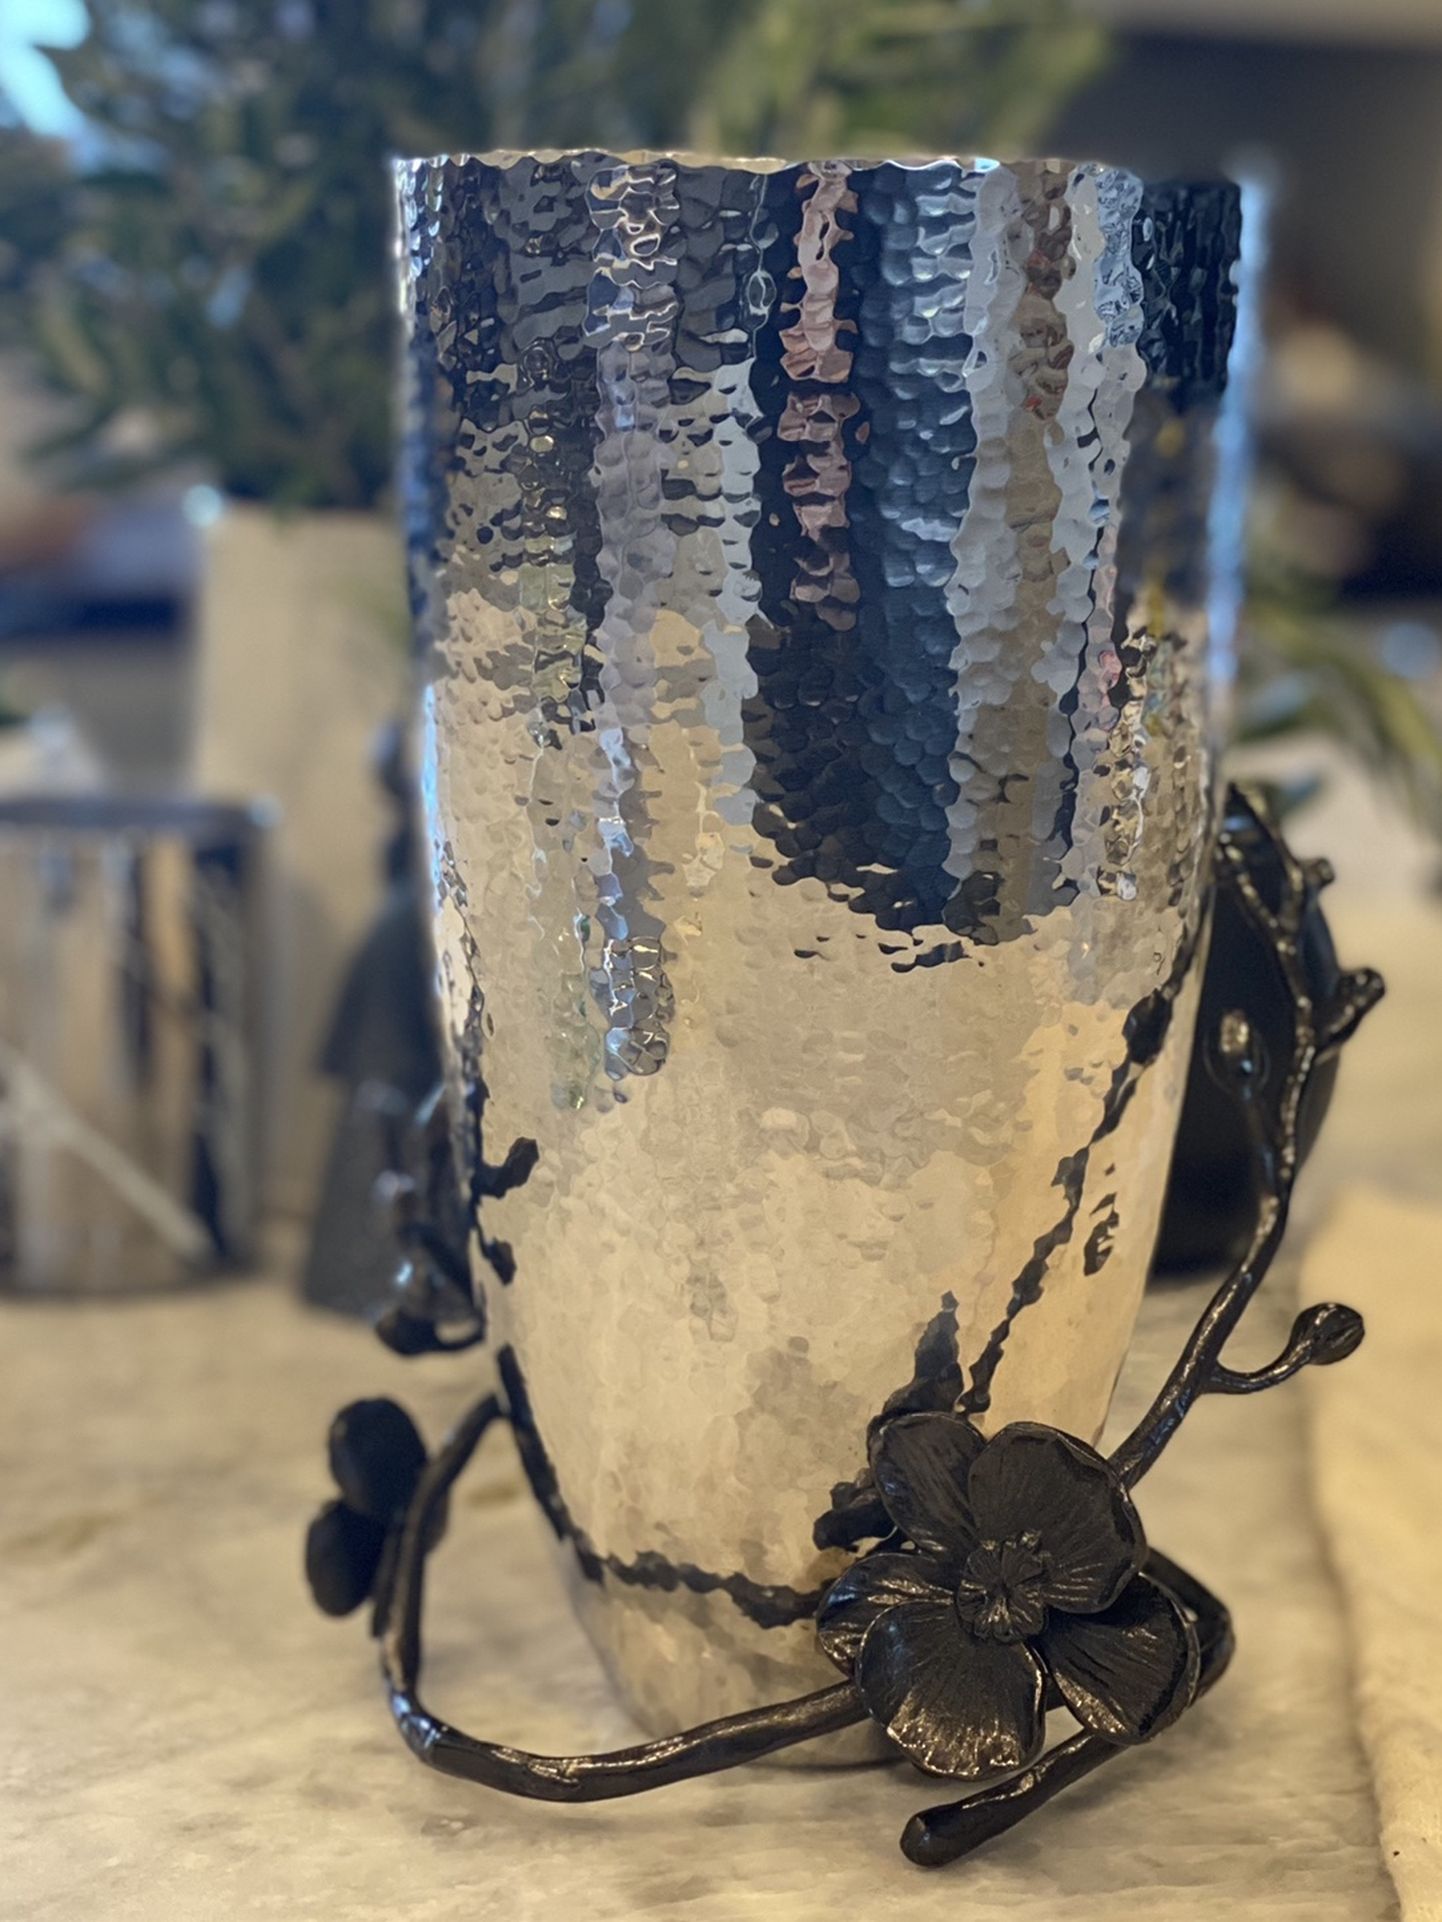 Michael Aram Black Orchid Vase - Medium